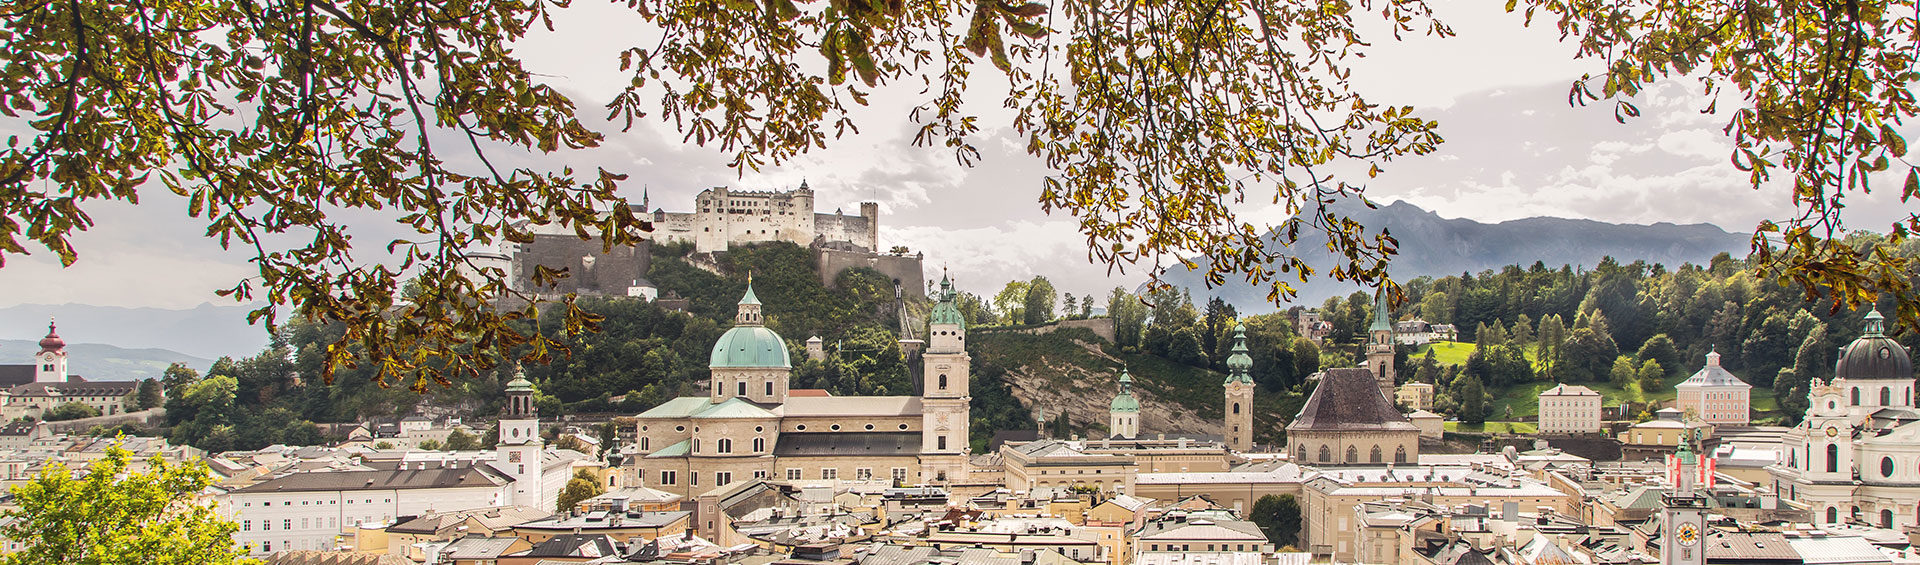 Altstadt Salzburg Ausflugsziel 1